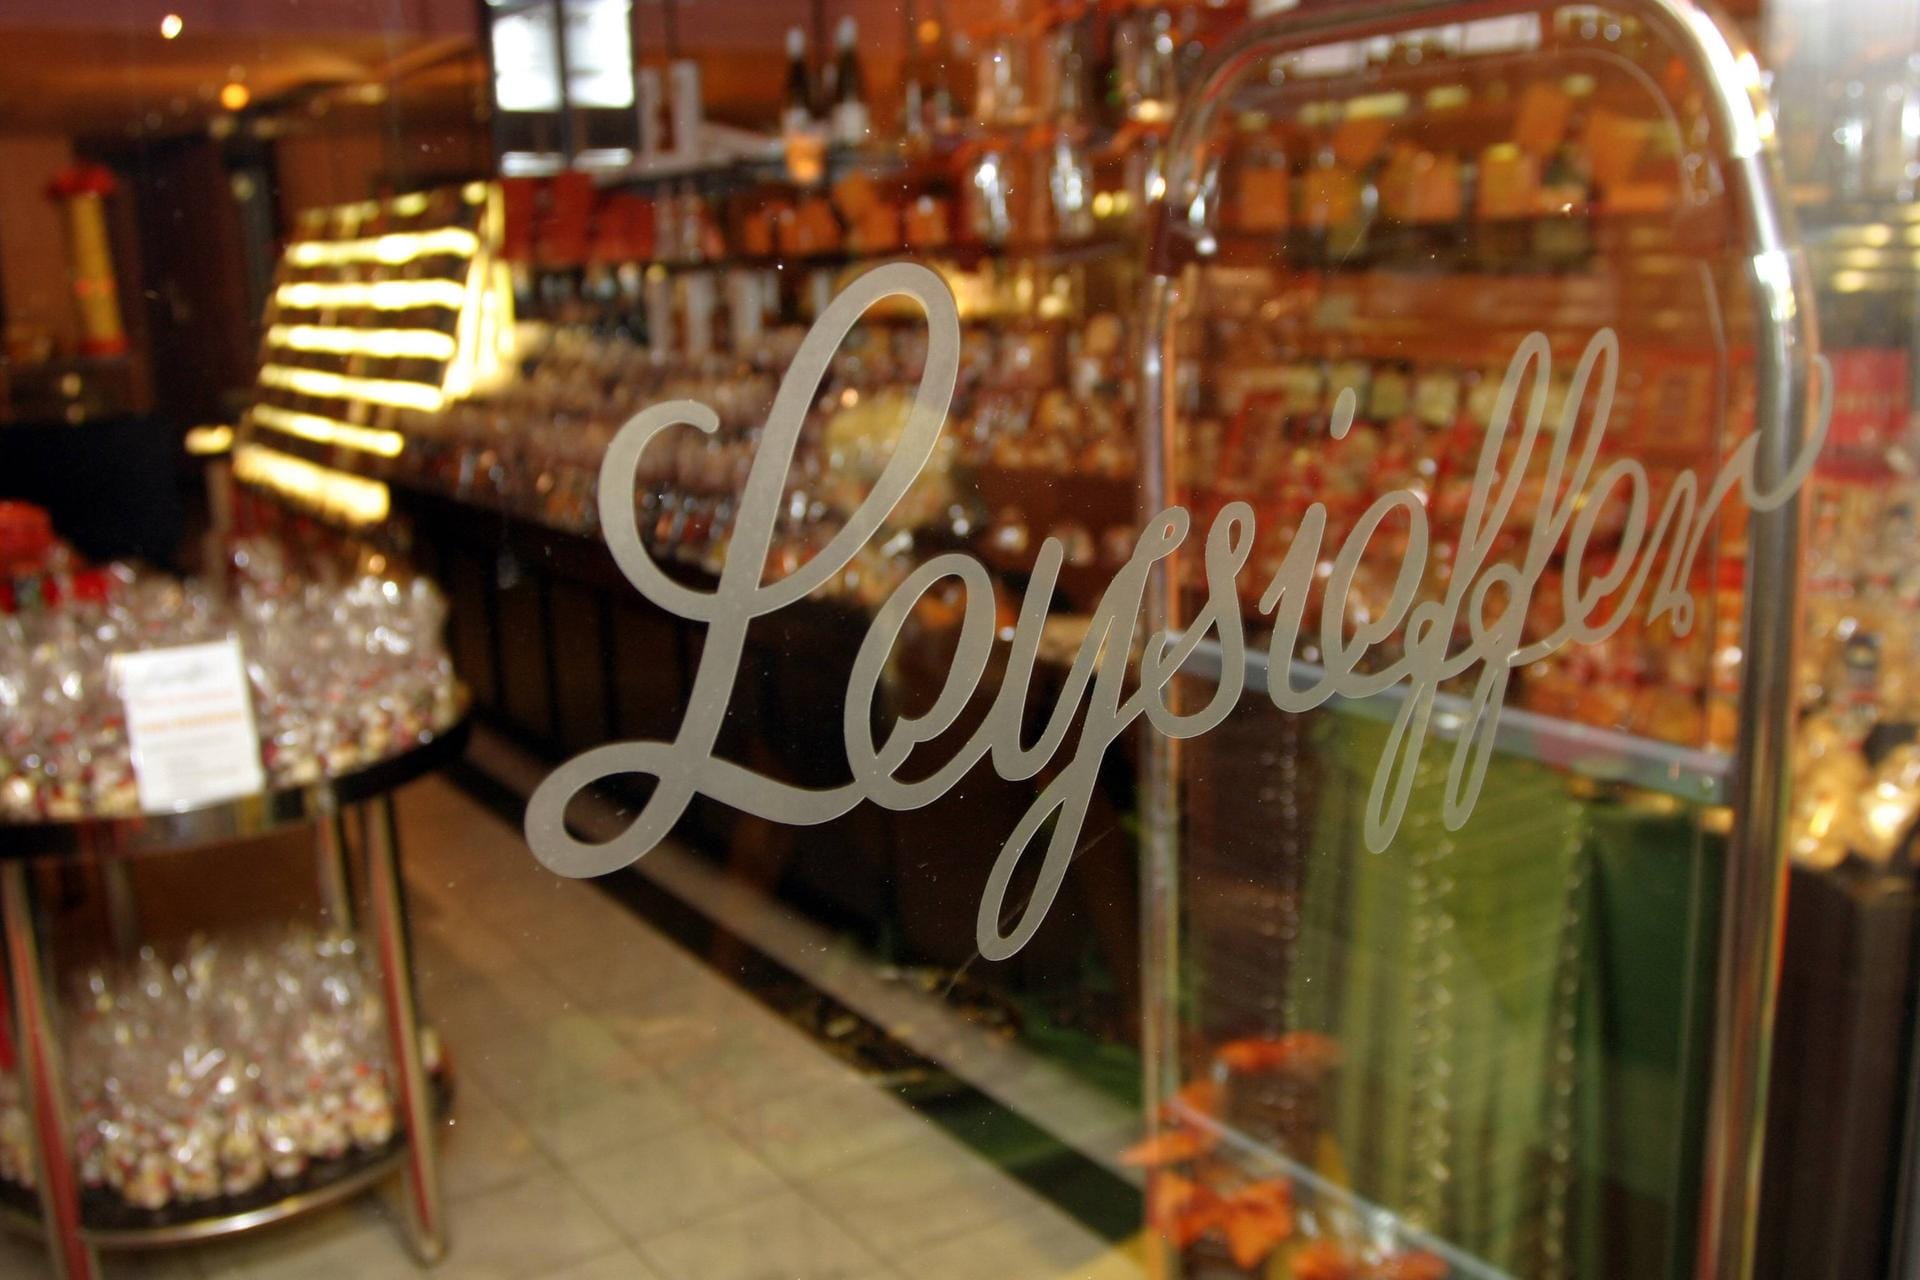 Der Pralinen- und Schokoladenhersteller Leysieffer ist zahlungsunfähig. Der Schokoladenhersteller betreibt Confiserien, Bistros und Cafés an fast 30 Standorten in Deutschland sowie eine Filiale in Peking.